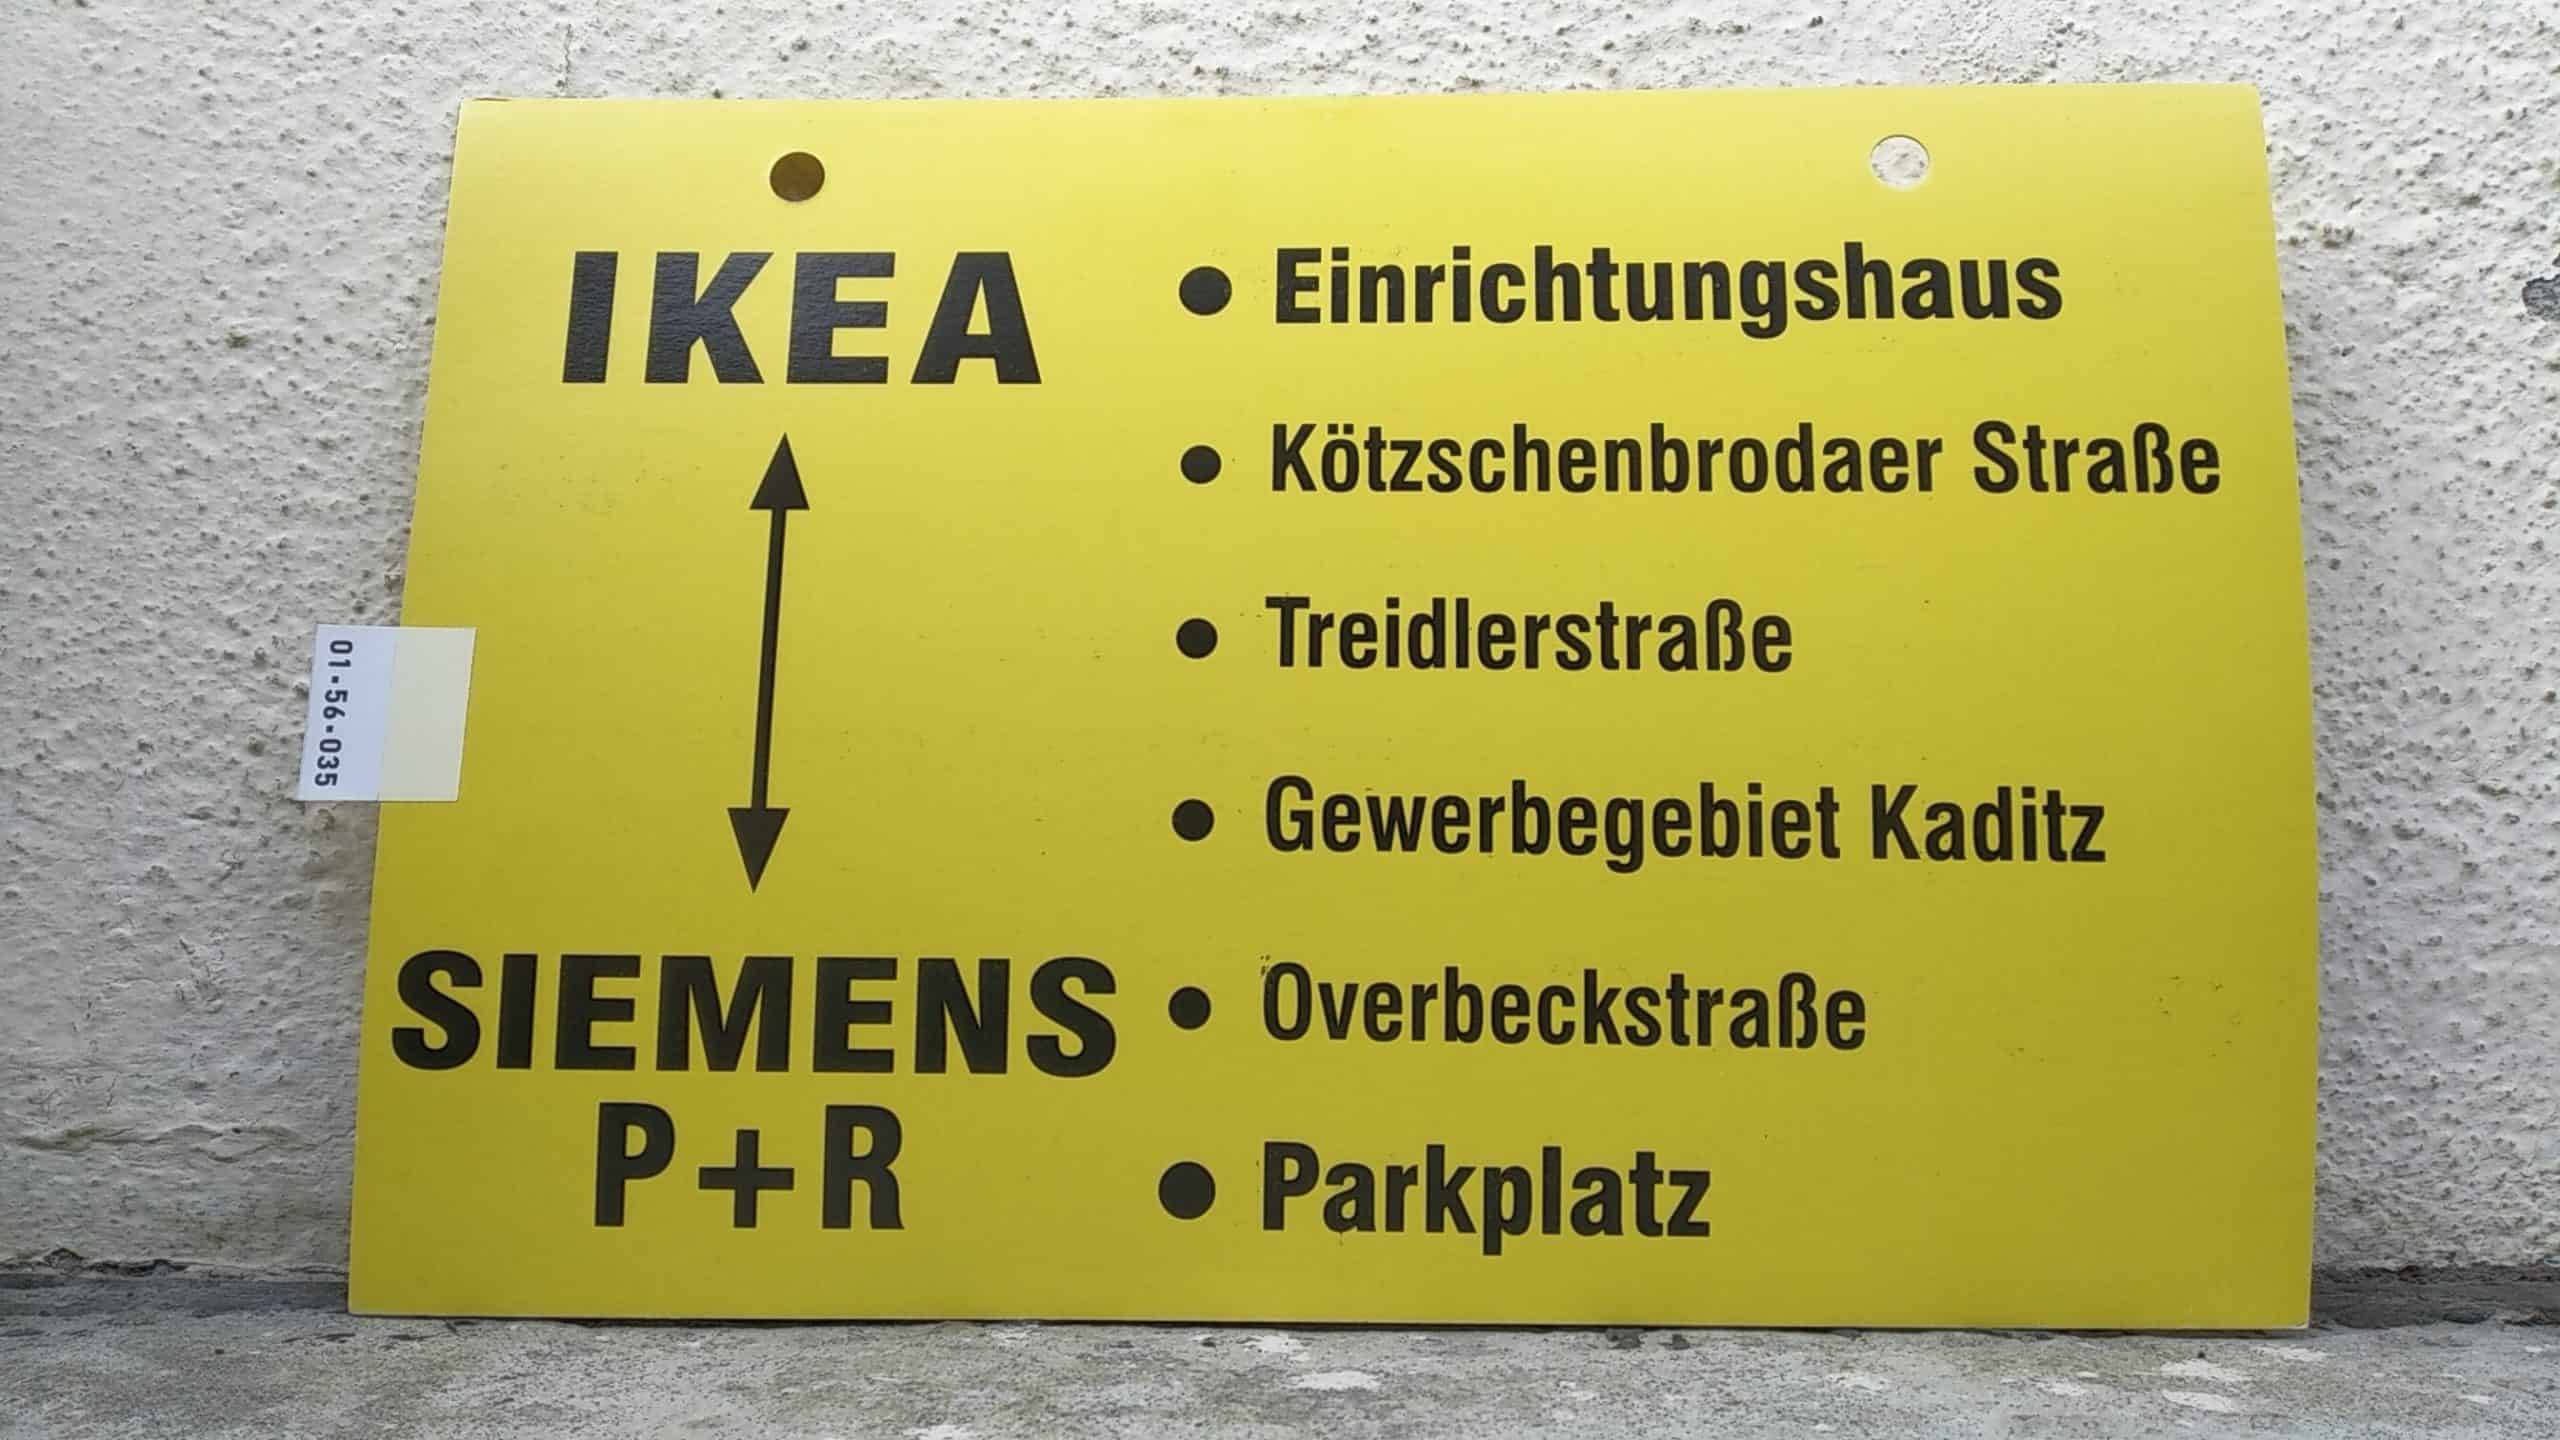 Ein seltenes Bus-Linienschild aus Dresden von IKEA nach SIEMENS P+R